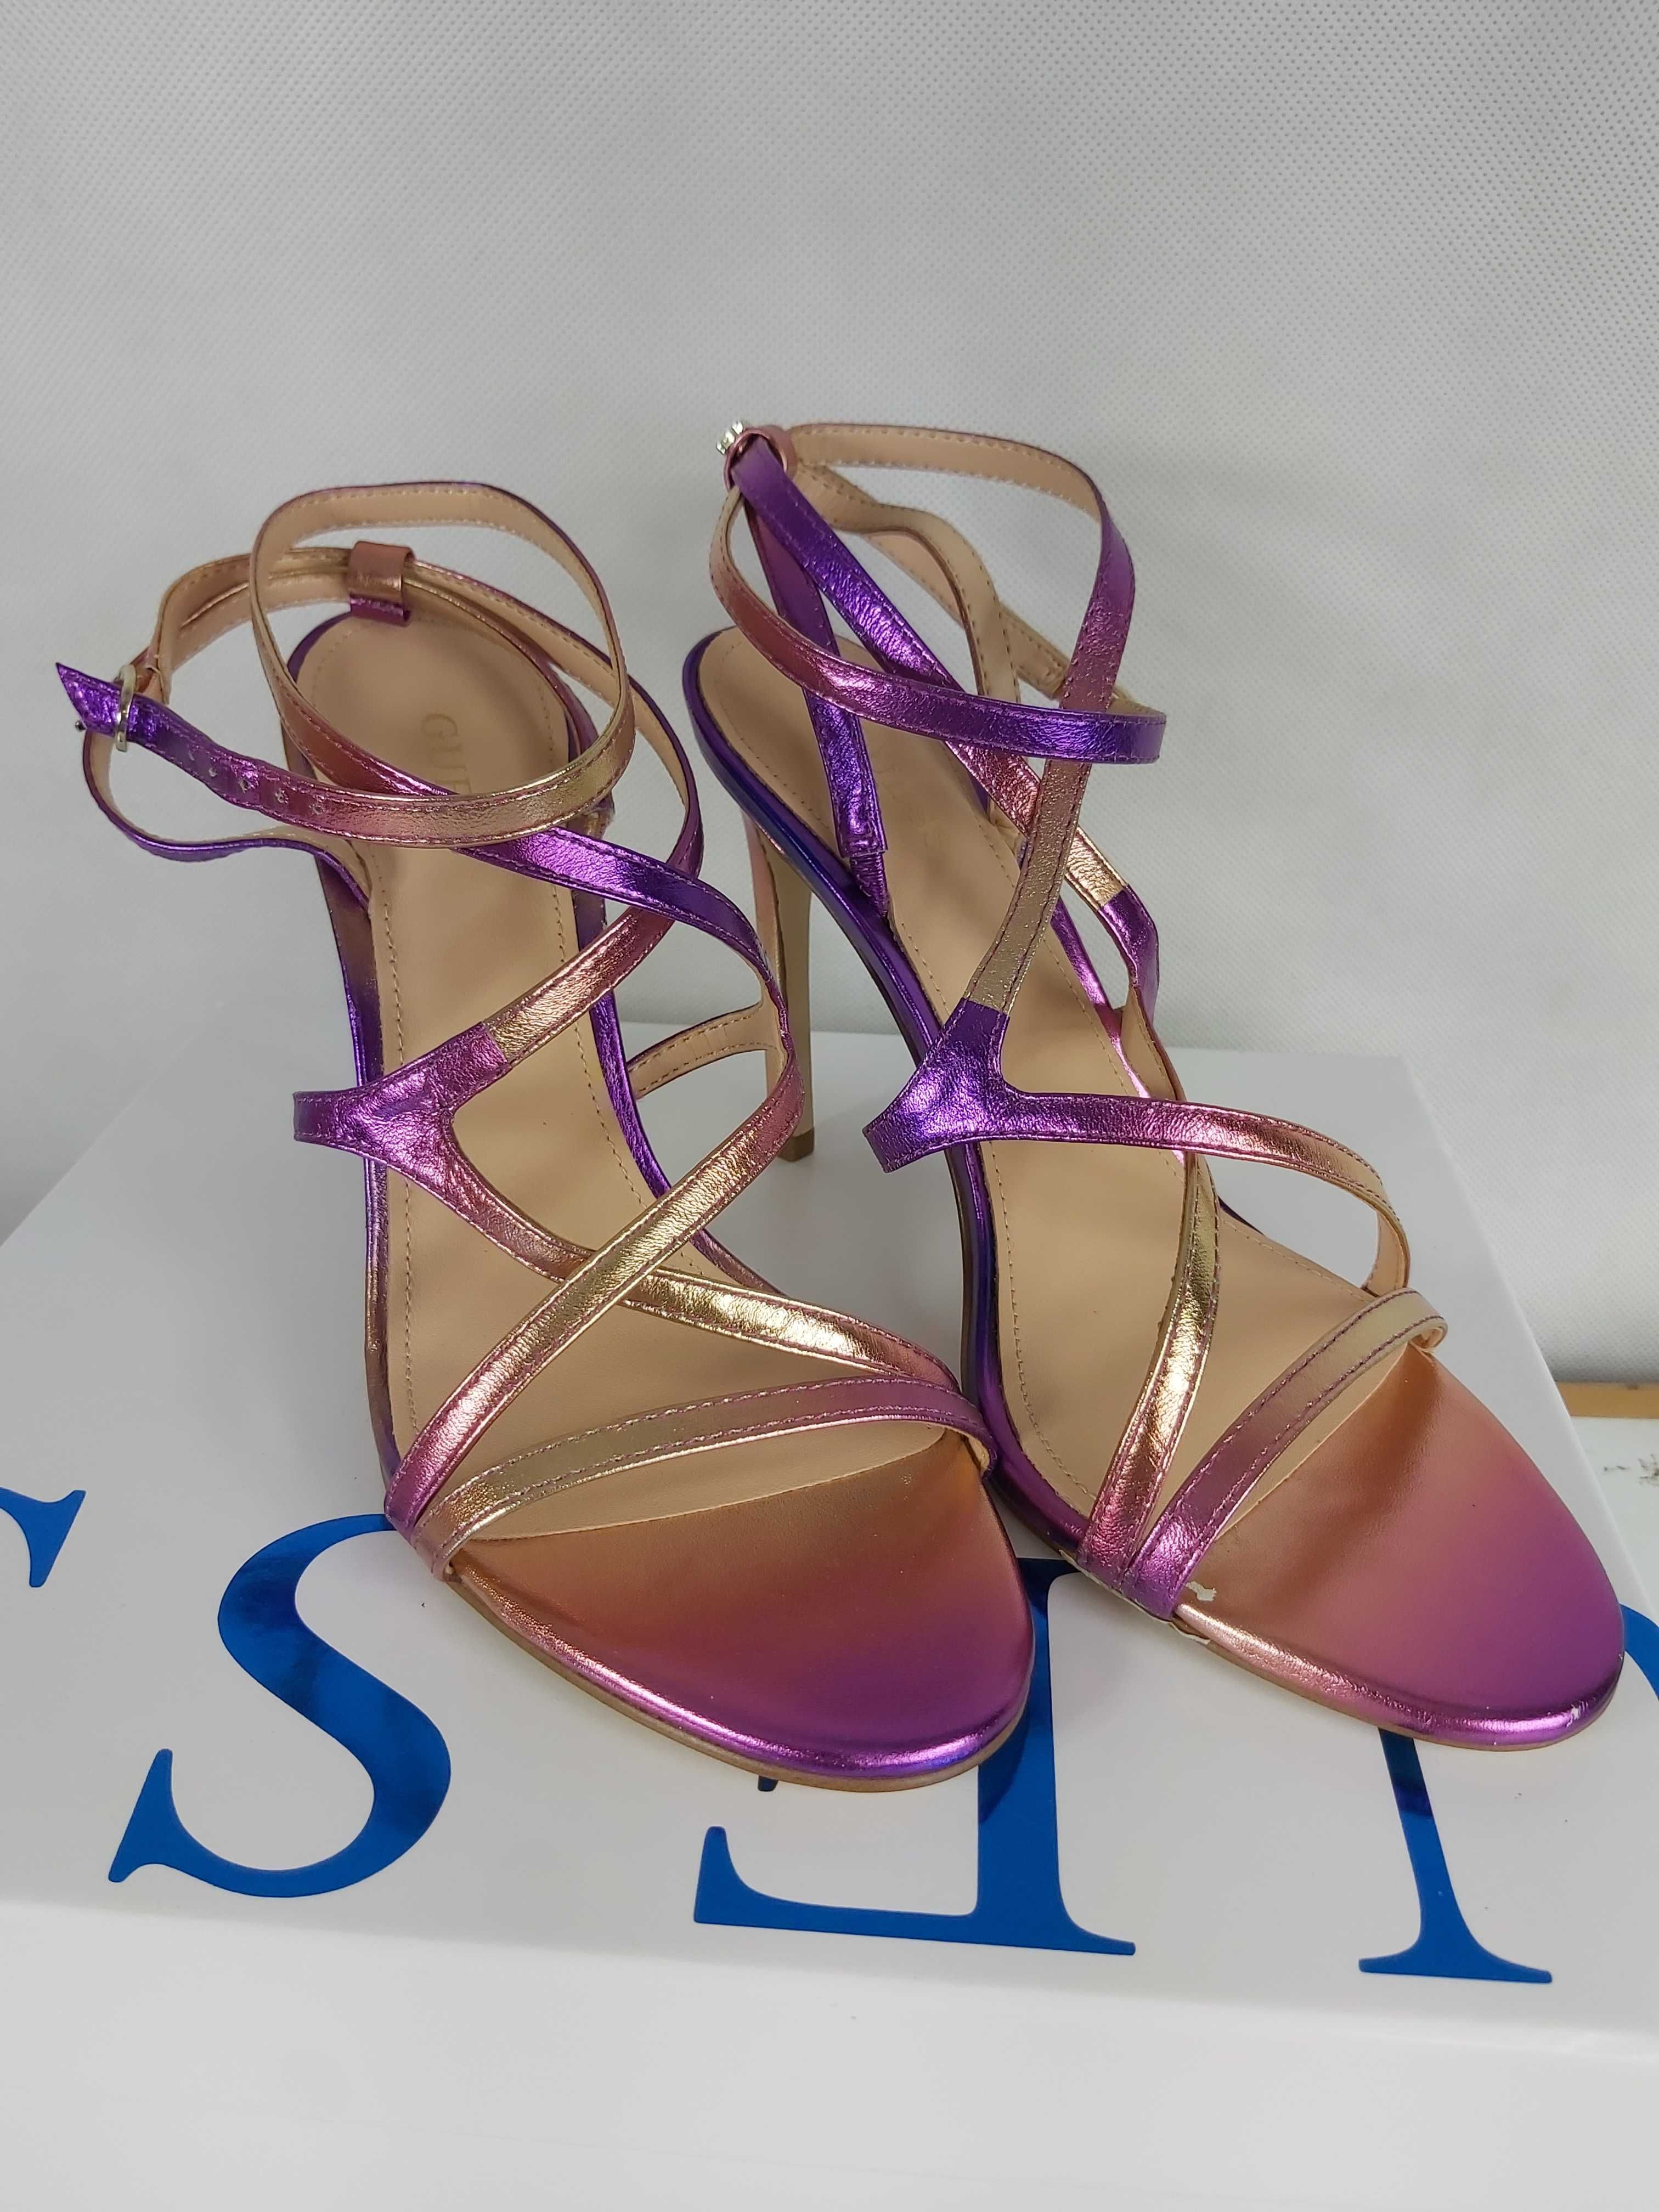 Nowe fioletowe rozowe metaliczne sandaly GUESS szpilki 38 a260